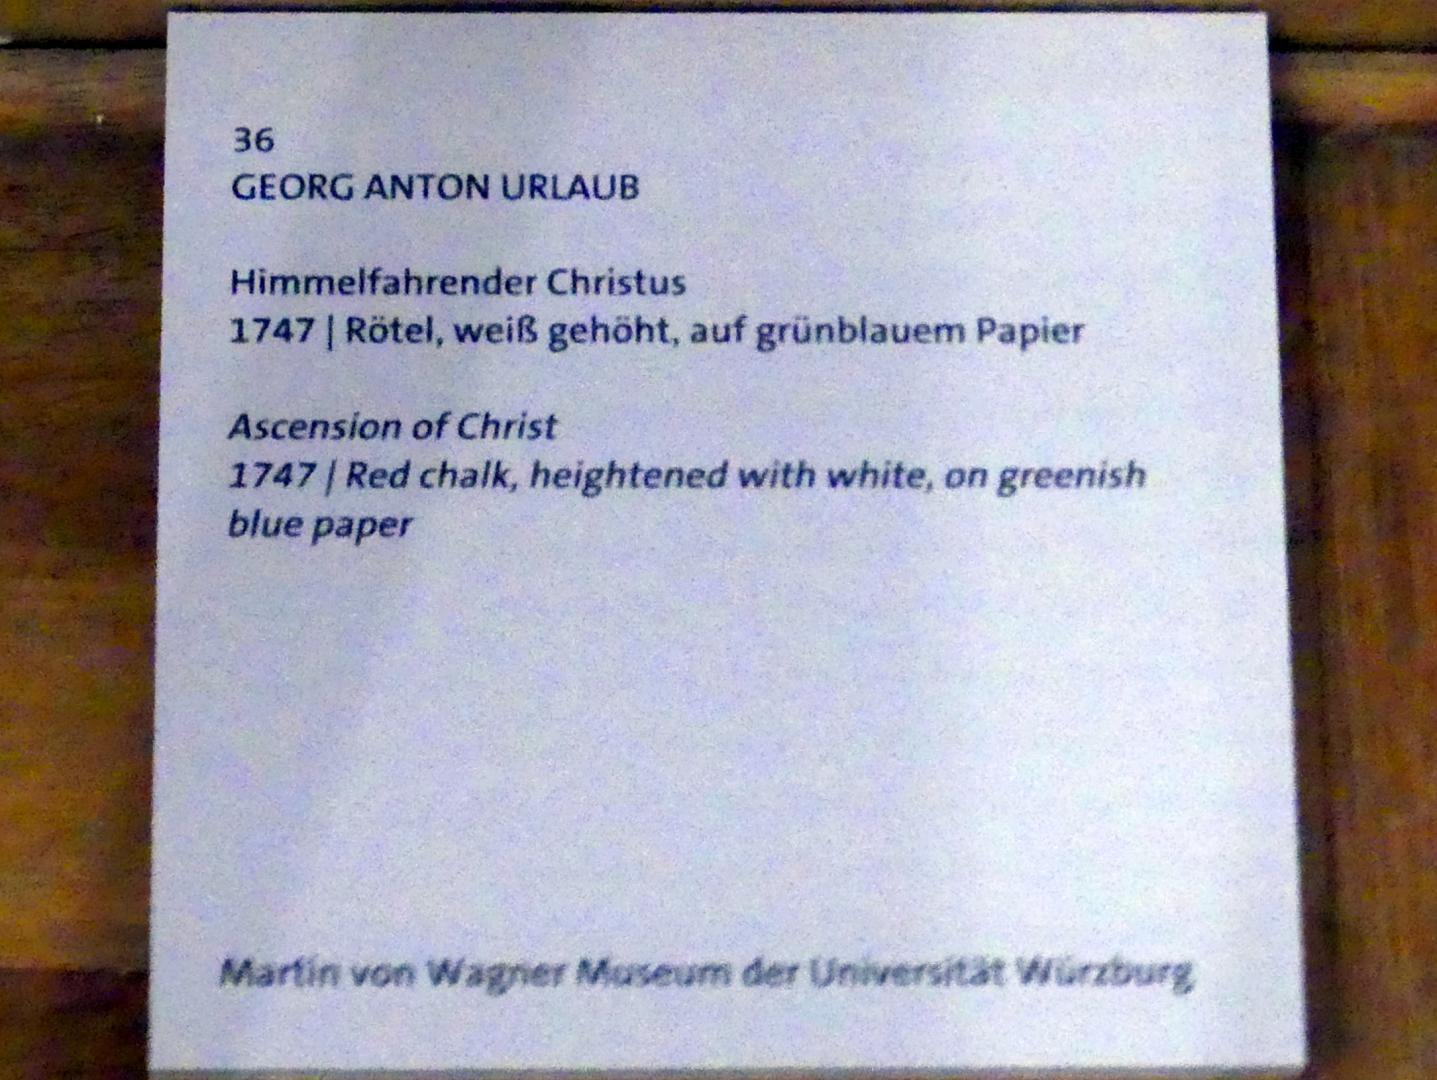 Georg Anton Urlaub (1735–1758), Himmelfahrender Christus, Würzburg, Martin von Wagner Museum, Ausstellung "Tiepolo und seine Zeit in Würzburg" vom 31.10.2020-15.07.2021, Saal 2, 1747, Bild 3/4